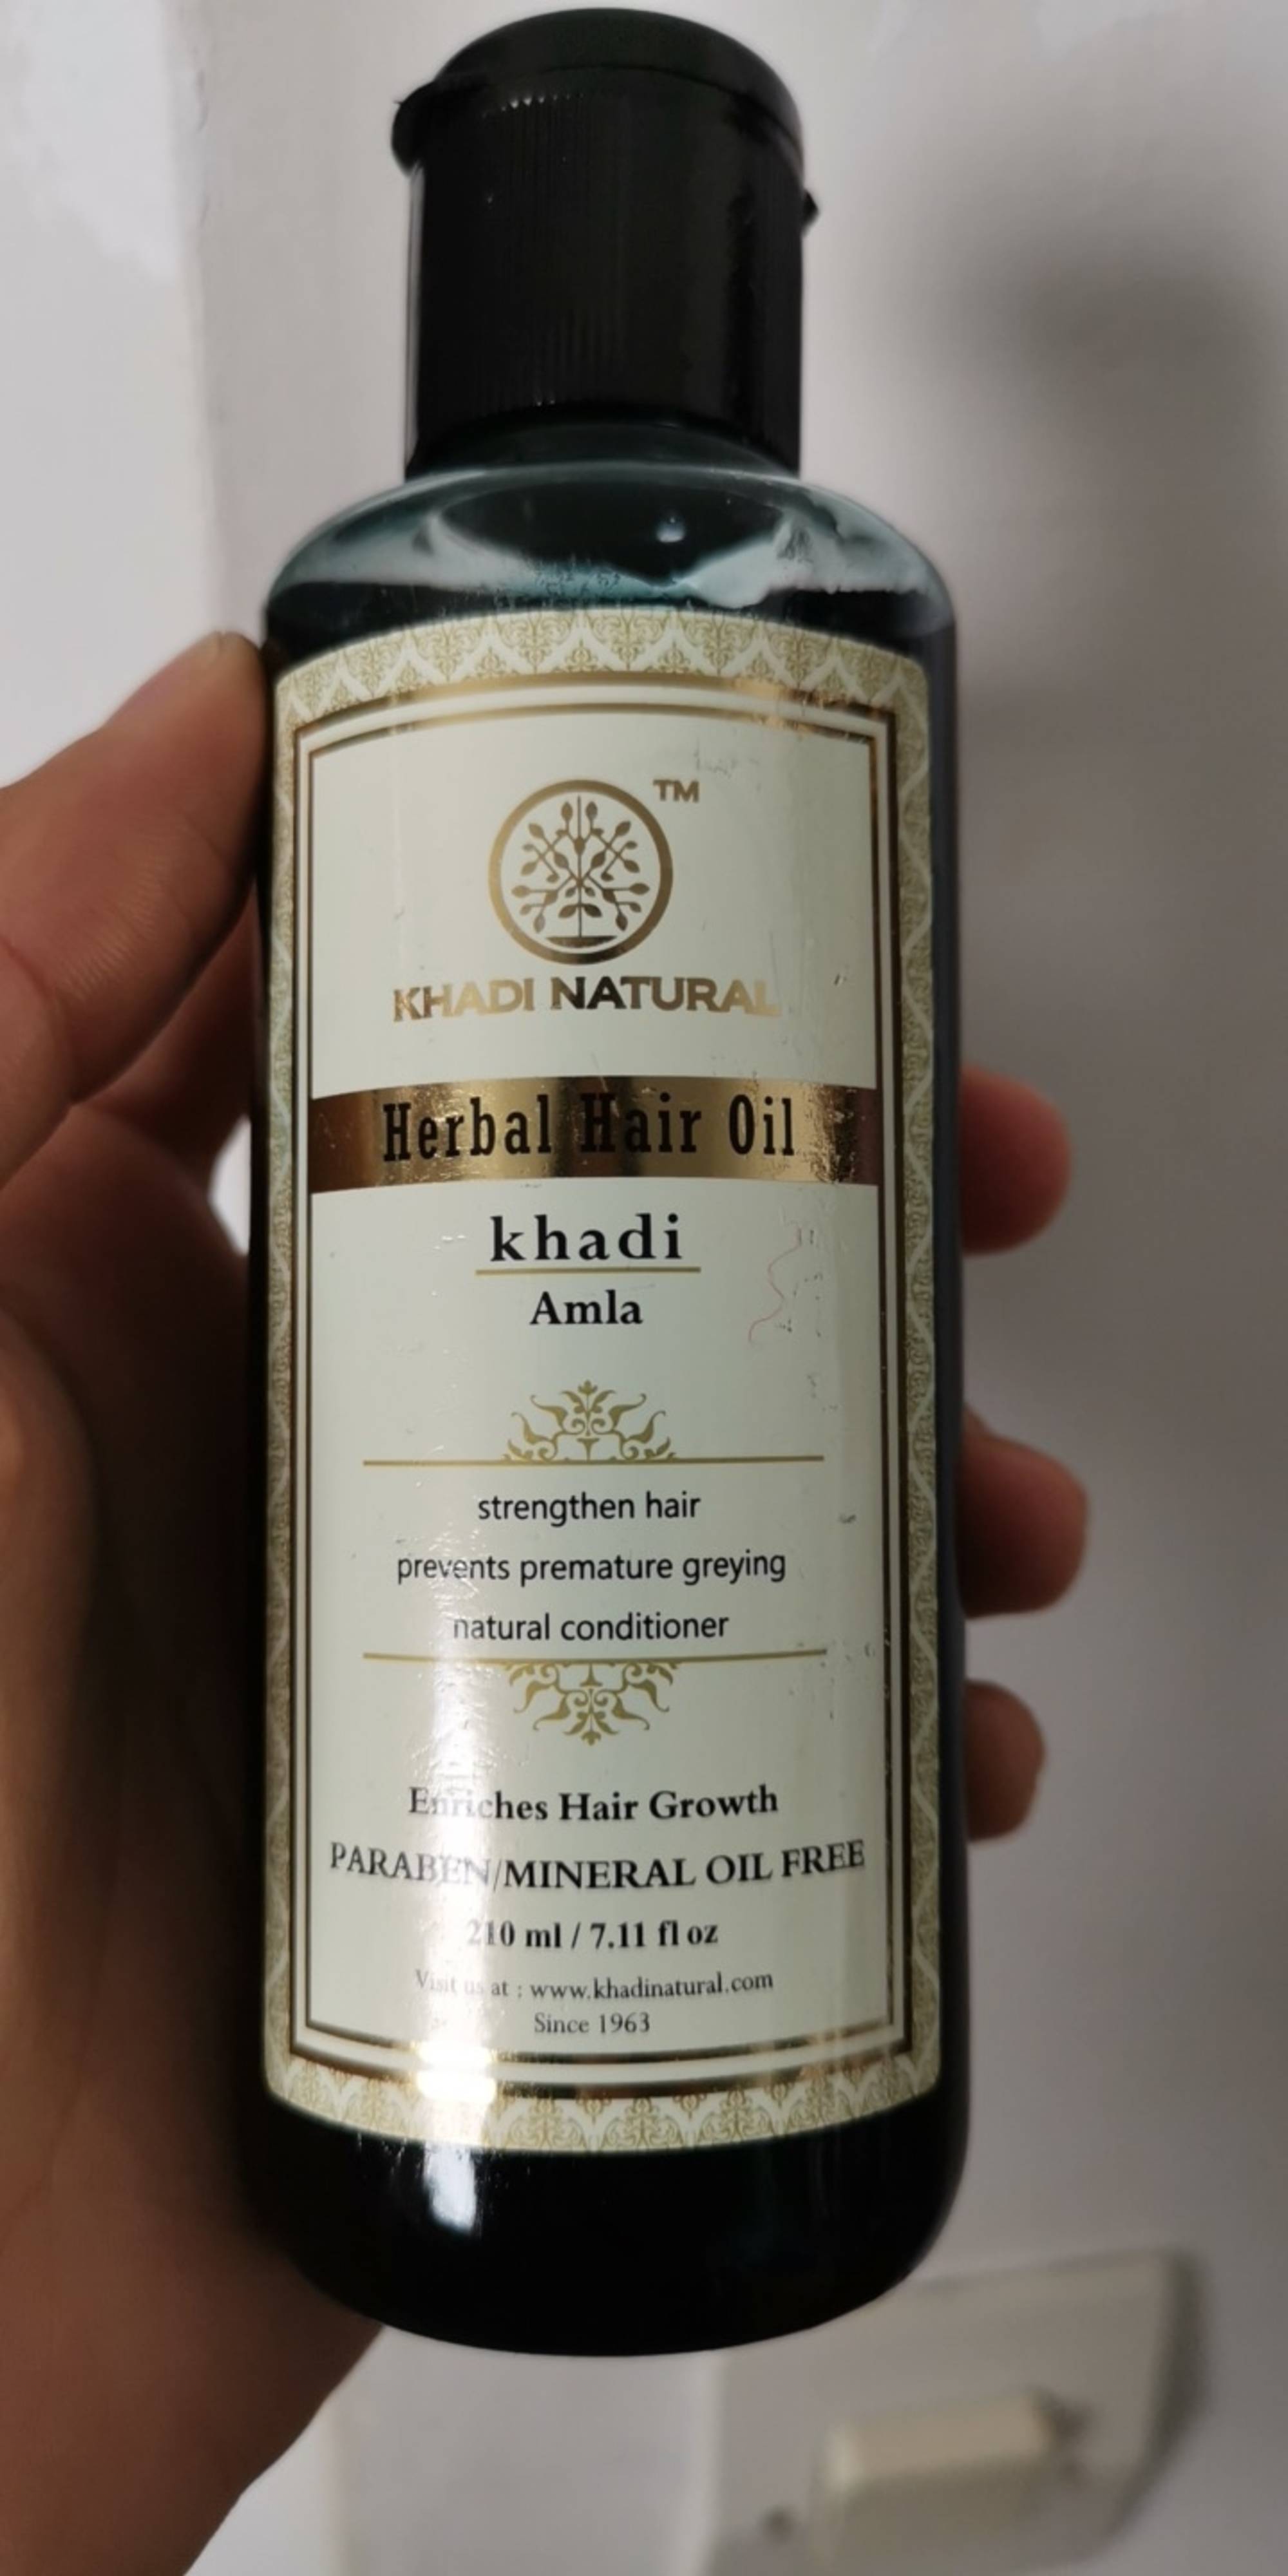 KHADI NATURAL - Amla - Herbal hair oil